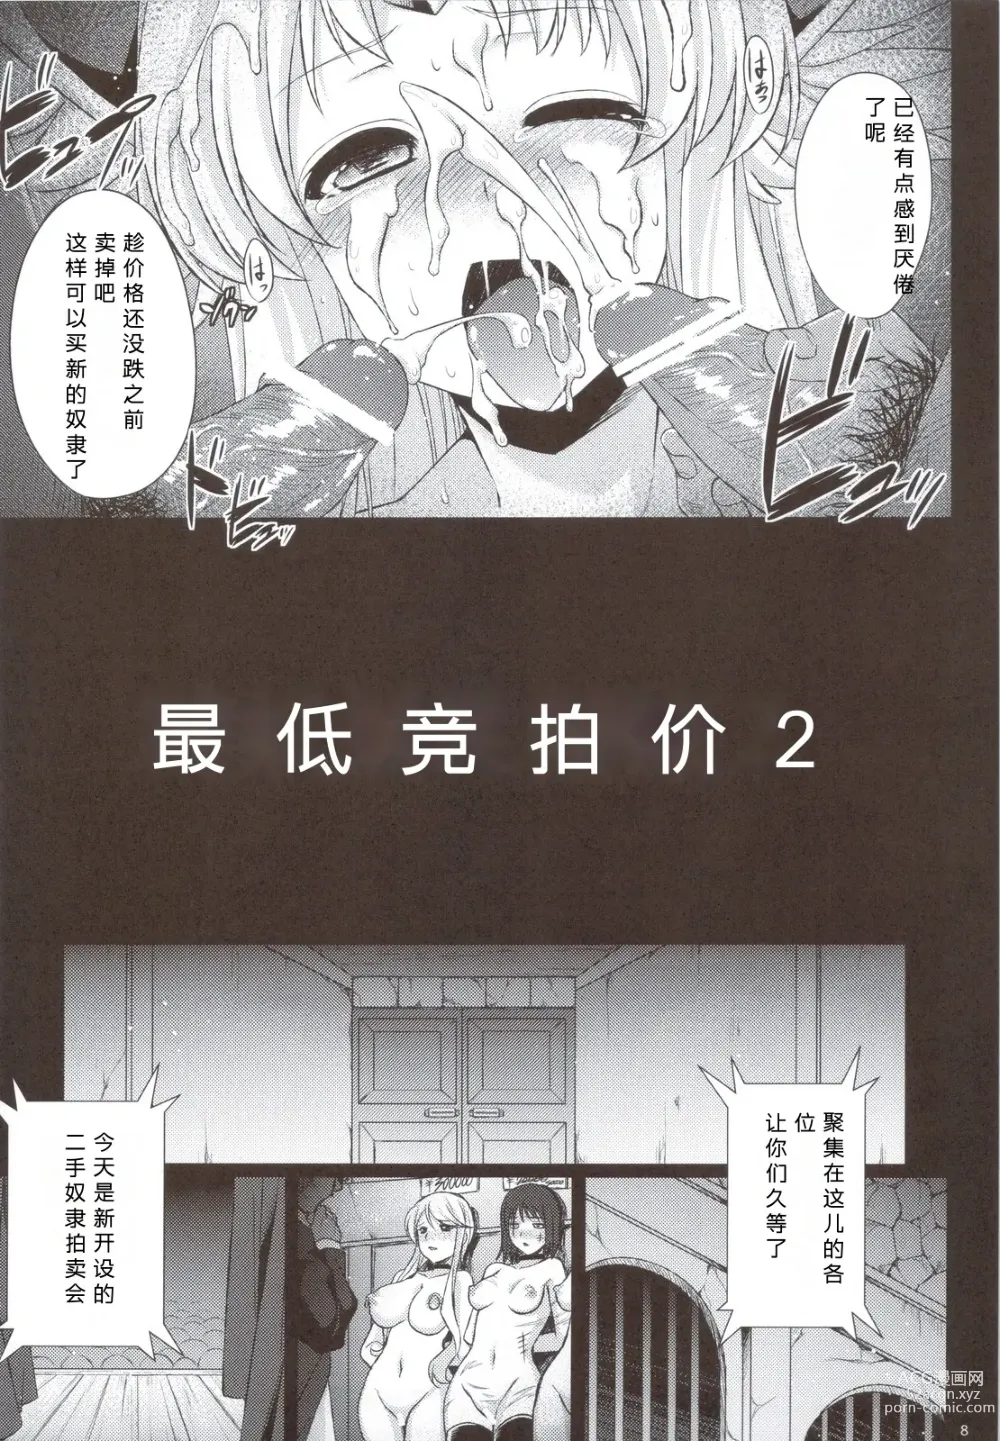 Page 9 of doujinshi Saitei Rakusatsu Kakaku 2